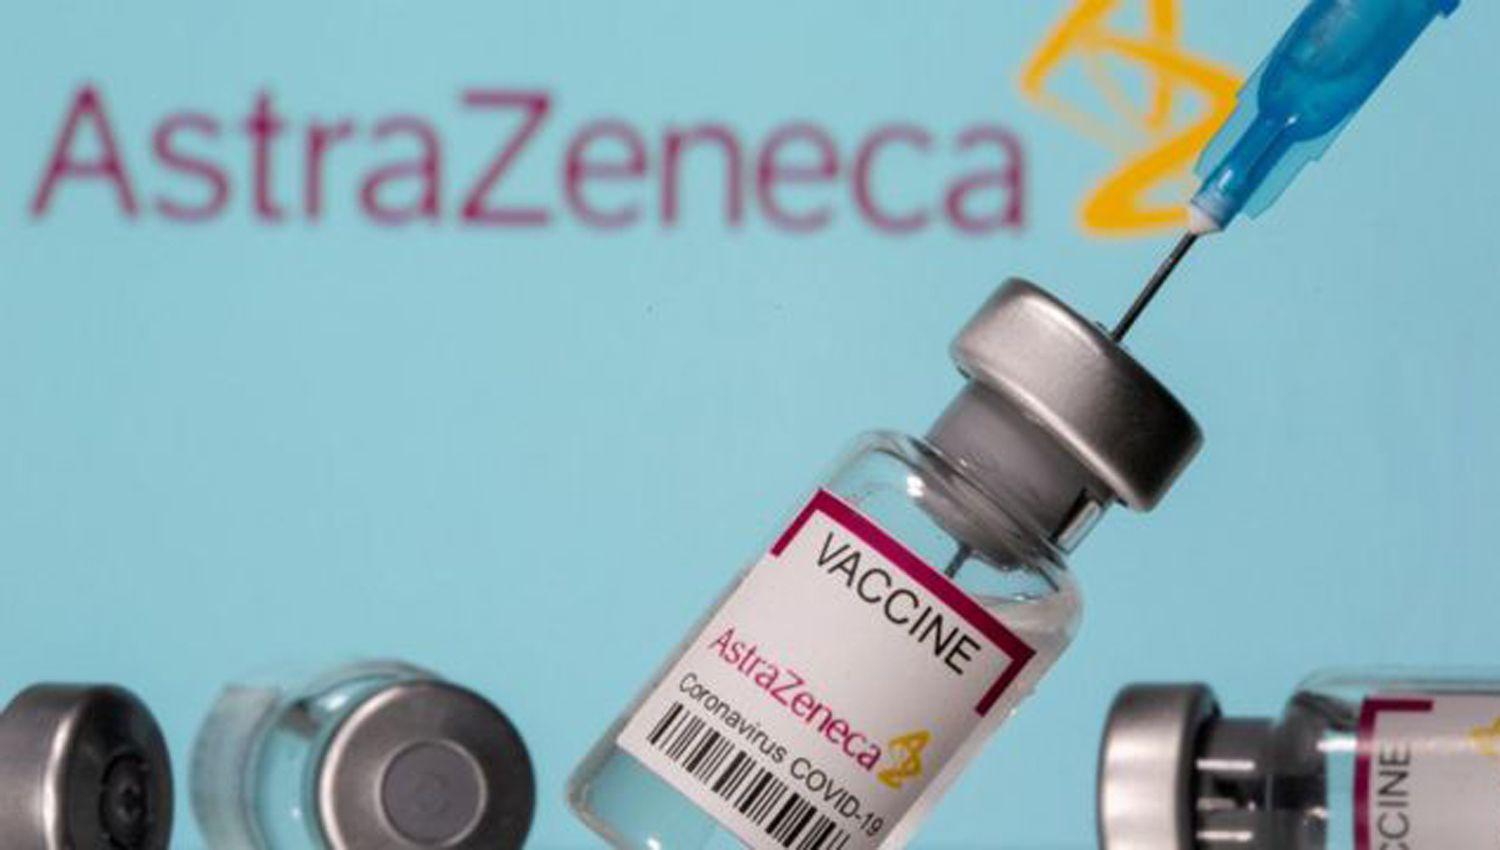 La vacuna de AstraZeneca suma respaldo- ldquoEl riesgo de trombosis es mayor si se tiene coronavirus que con la vacunardquo